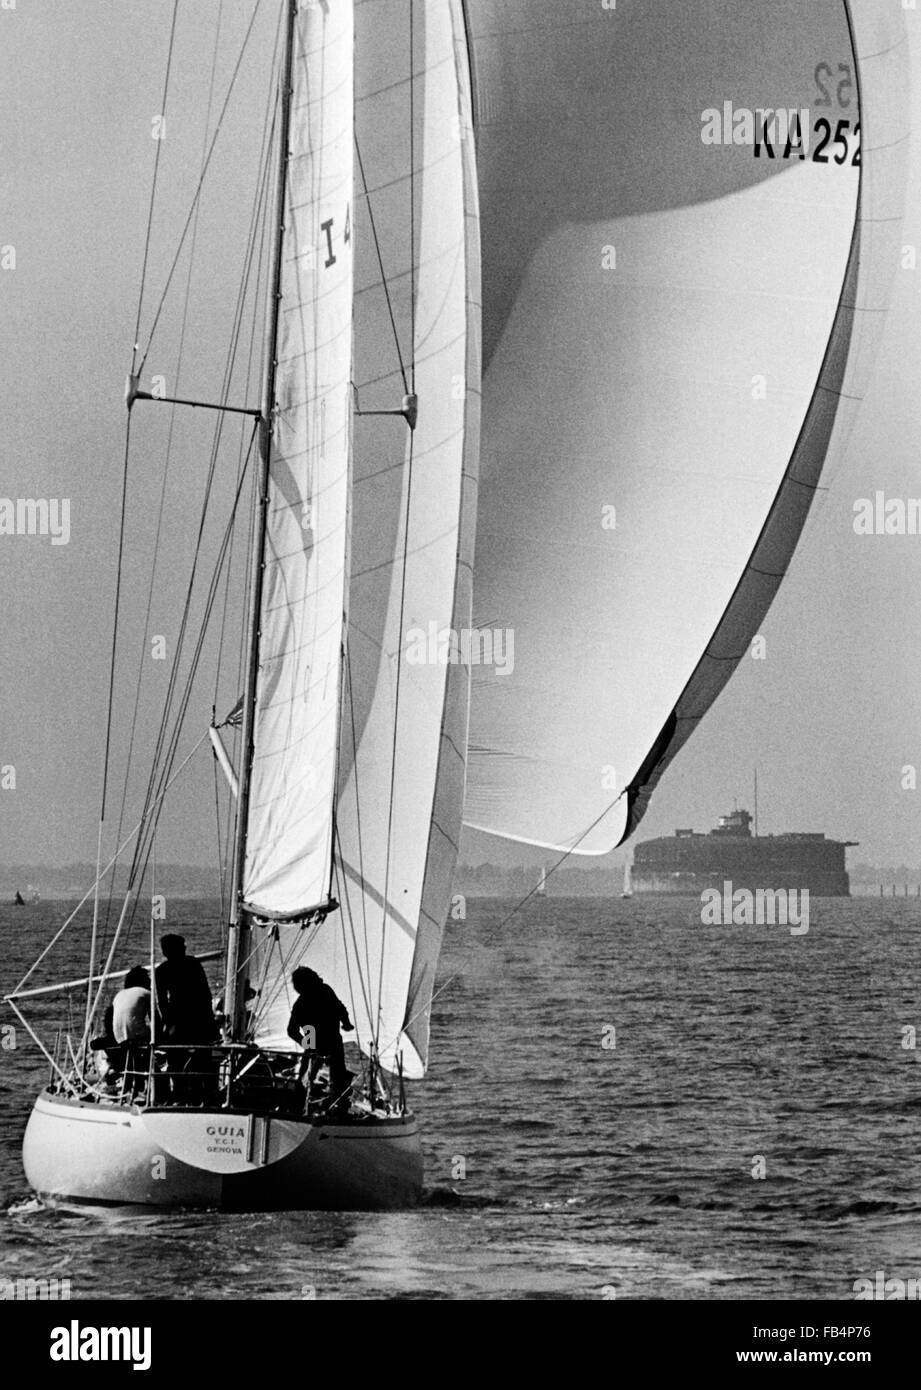 AJAX NEWS FOTO. 1974. PORTSMOUTH, Inghilterra. - WHITBREAD Round the World Race - Fine - ITALIAN yacht con skipper GUIA DI GIORGIO FALCK TESTE PER LA LINEA DI FINITURA OFF SOUTHSEA. Foto: JONATHAN EASTLAND/AJAX REF:HDD WRWR 1974 GUIA Foto Stock